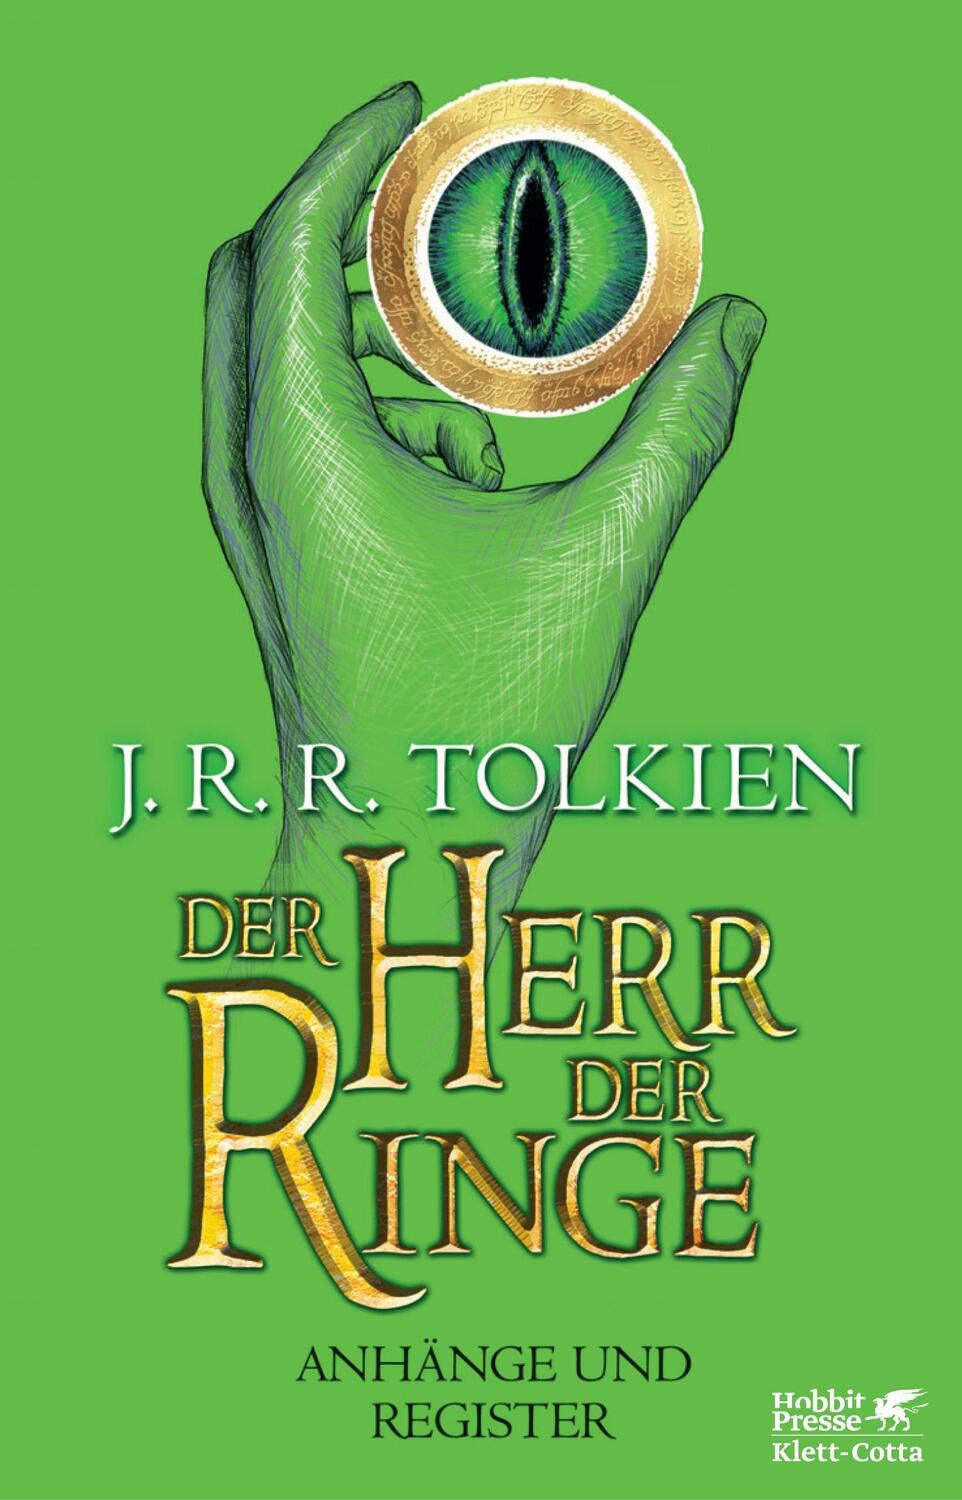 Der Herr der Ringe - Anhänge und Register Neuausgabe 2012 - Tolkien, J. R. R.